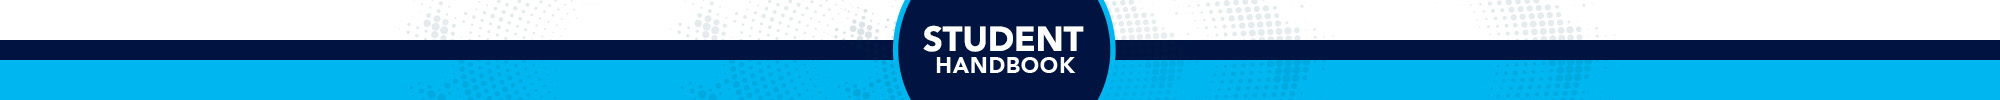 Student Handbook Header